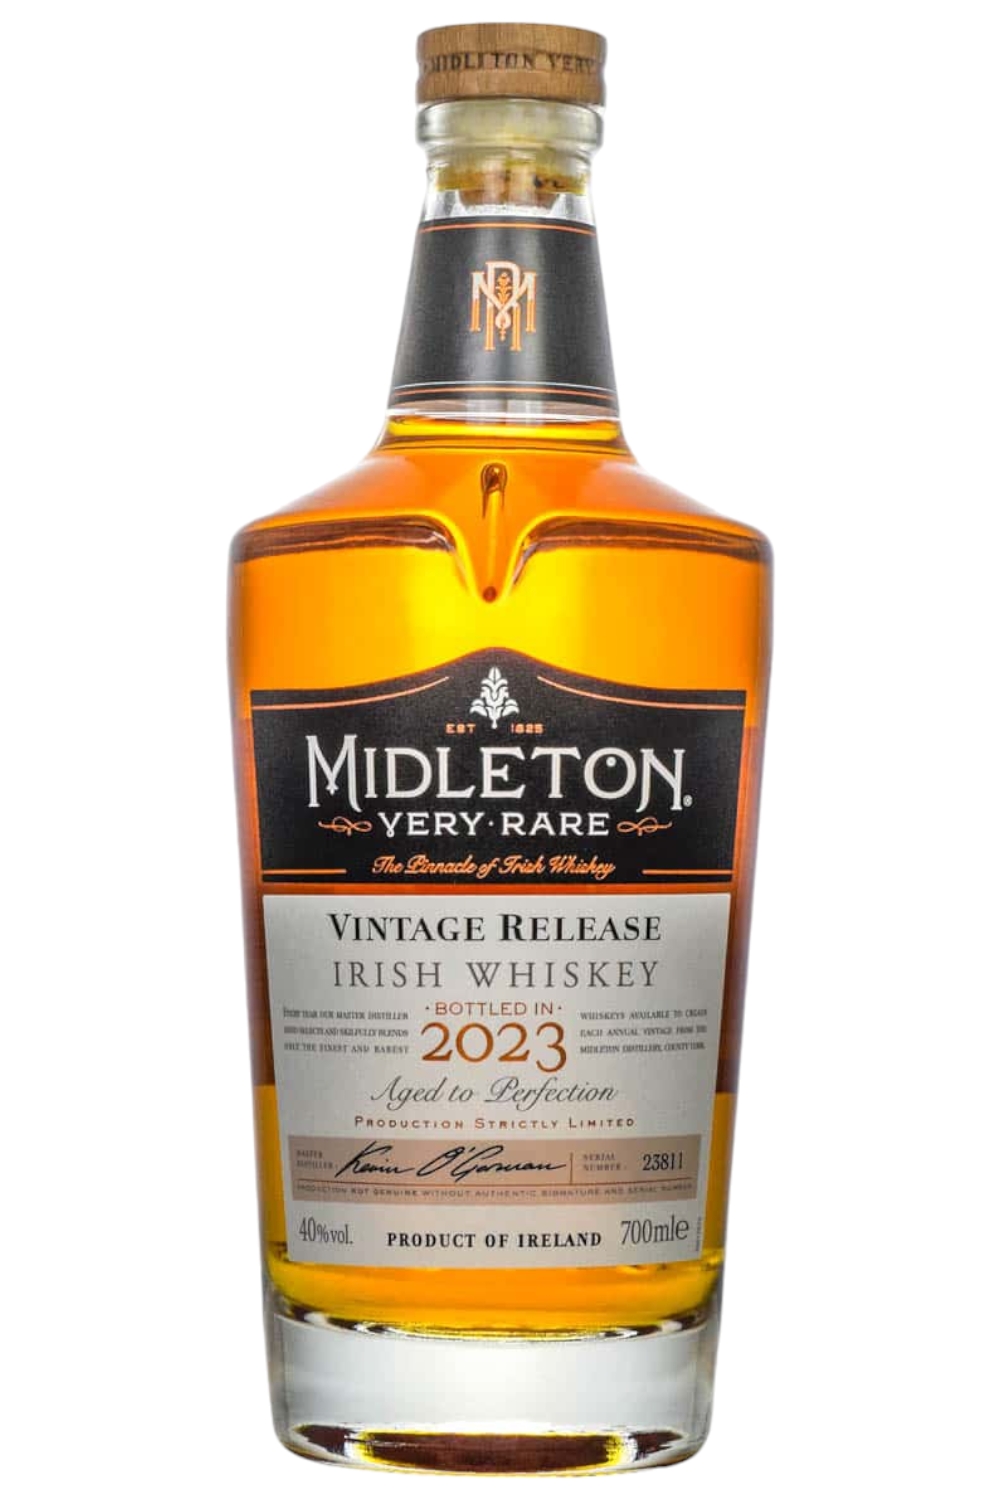 Midleton Very Rare 2023